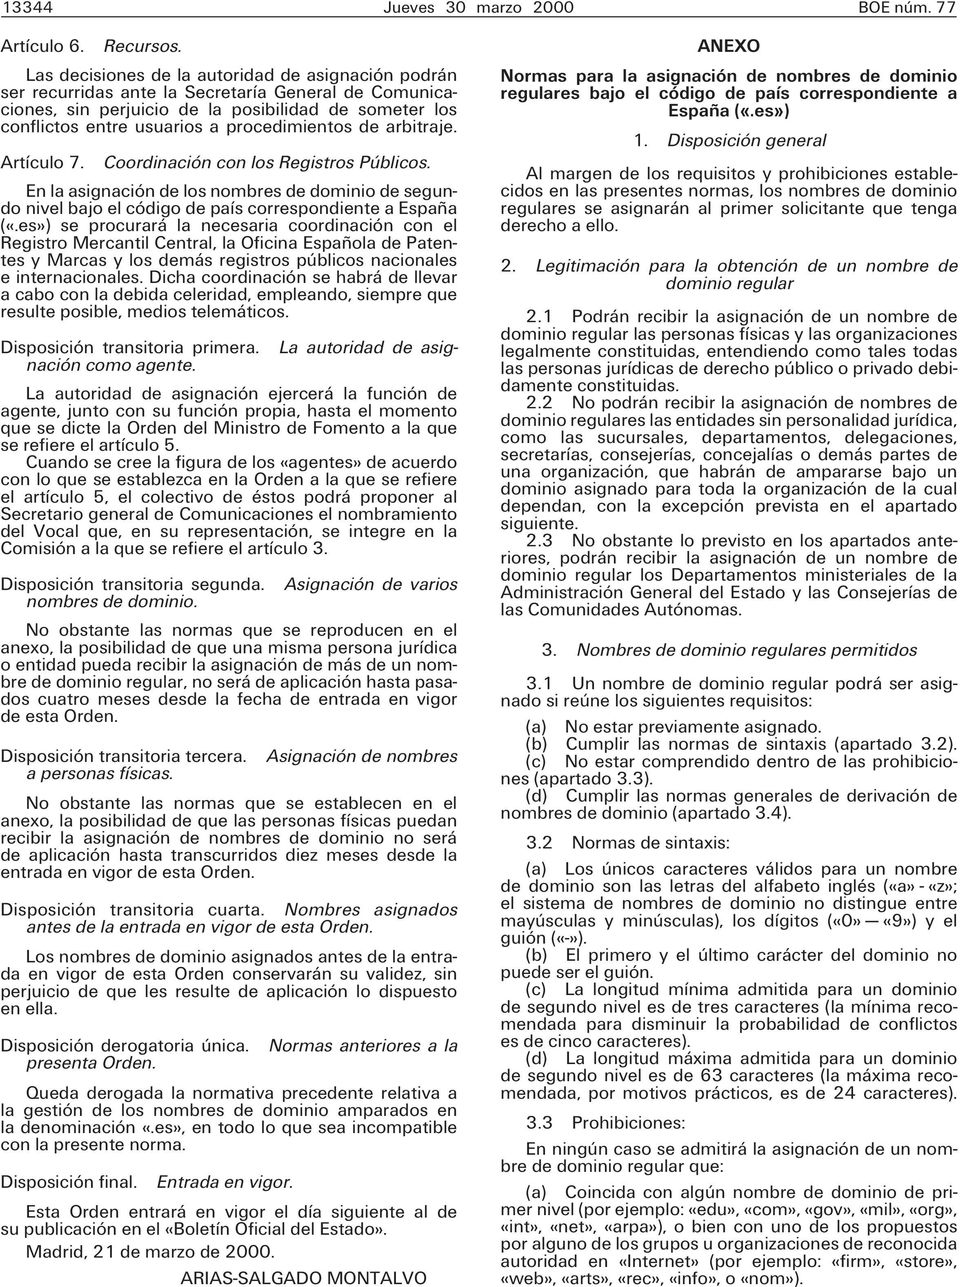 procedimientos de arbitraje. Artículo 7. Coordinación con los Registros Públicos. En la asignación de los nombres de dominio de segundo nivel bajo el código de país correspondiente a España («.